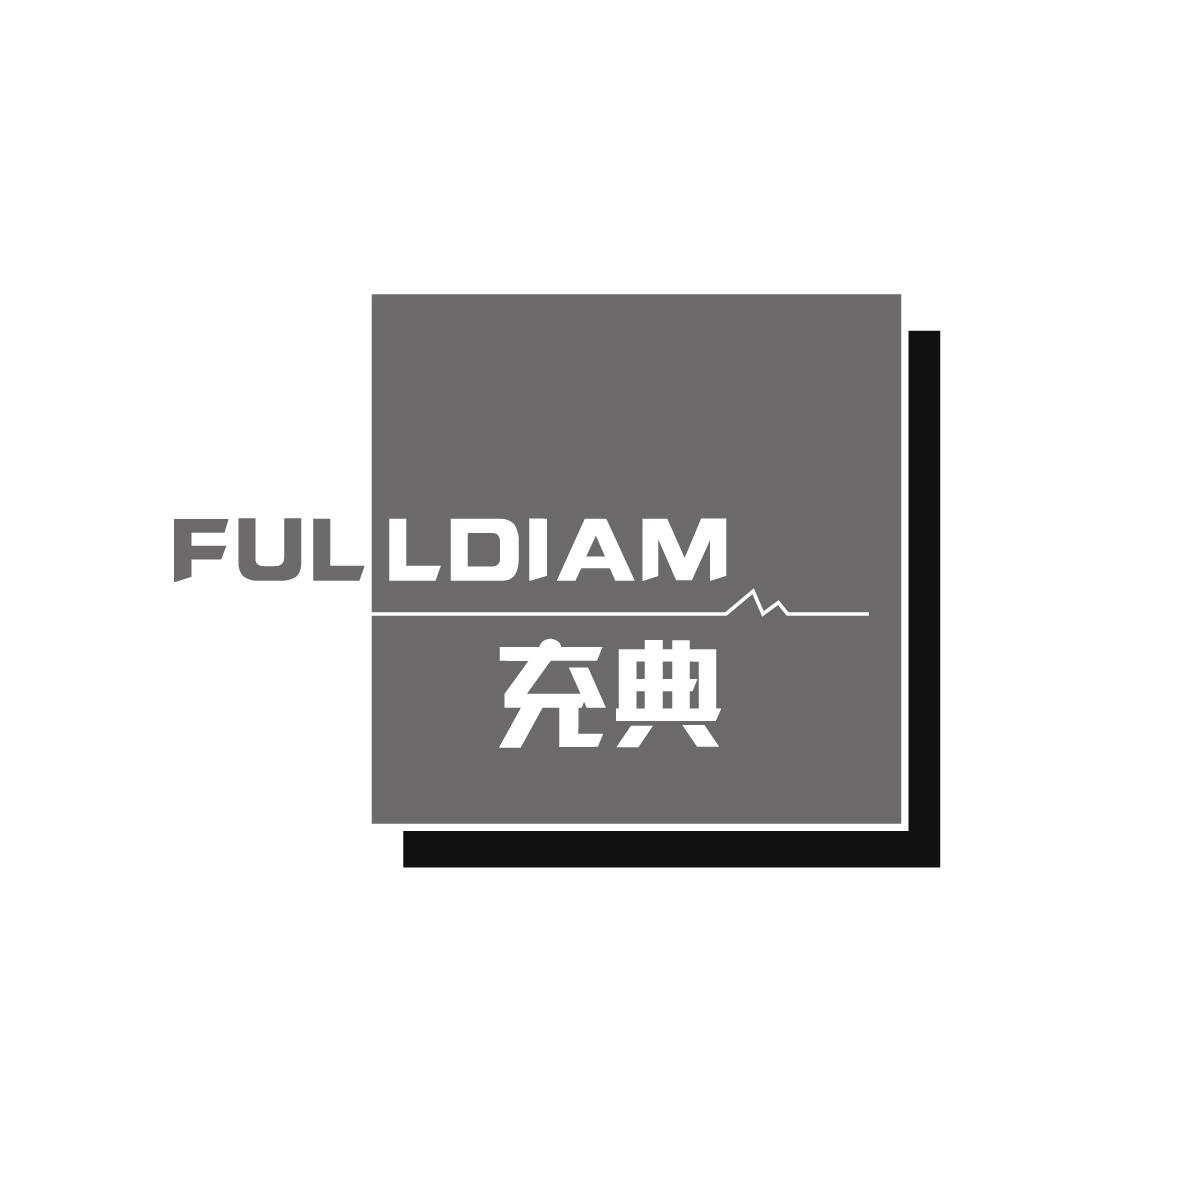  FULLDIAM